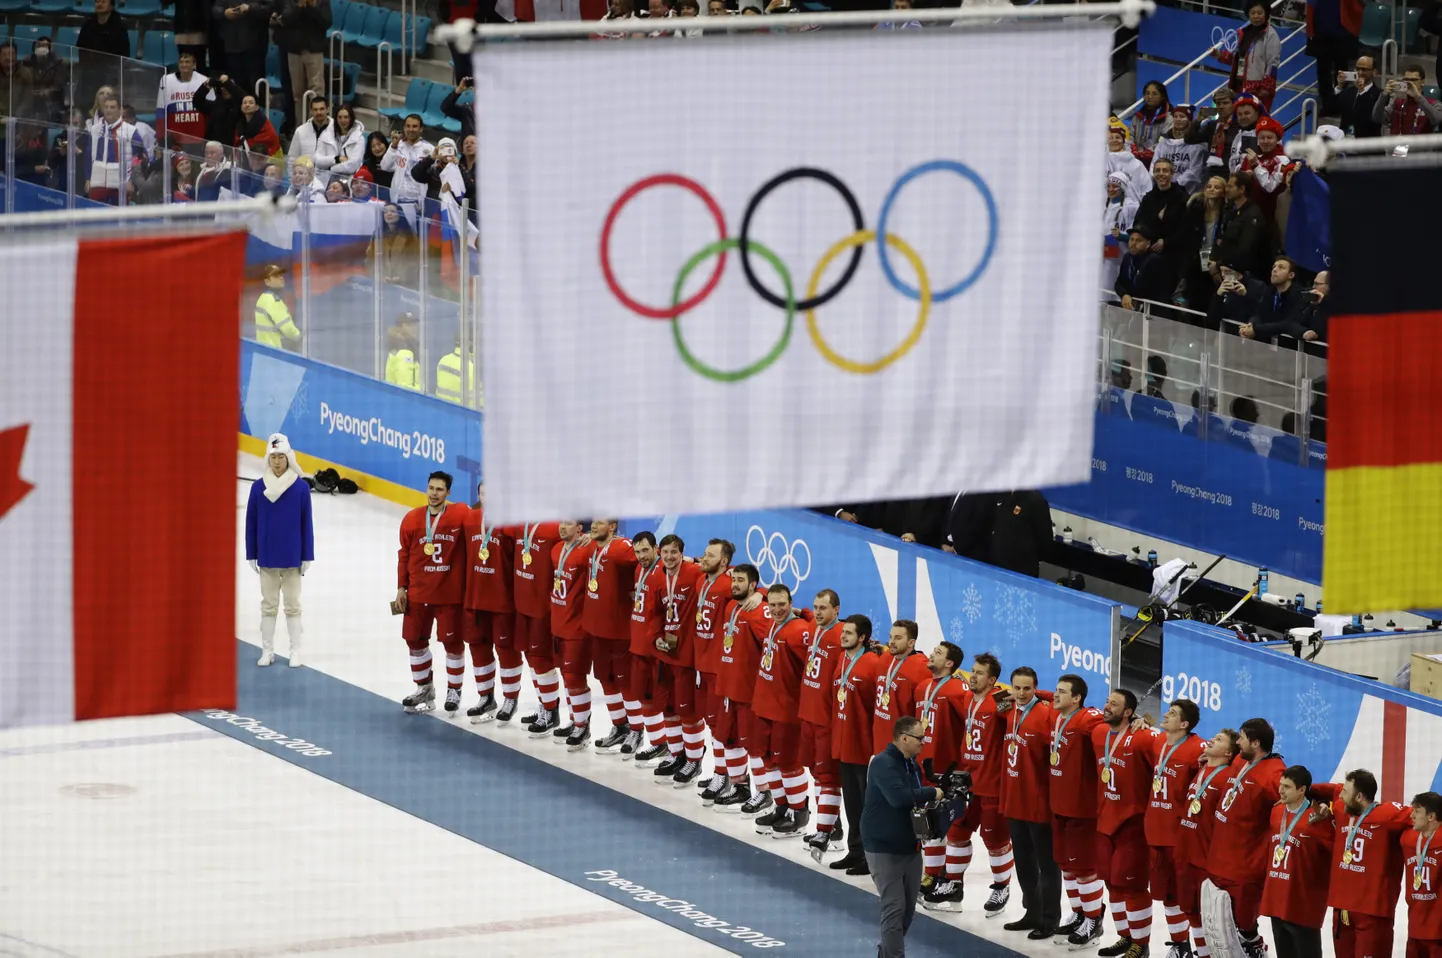 Venemaa hokimeeskond astus 2018. aasta taliolümpial keelust üle ja laulis koos fännidega rahvushümni.